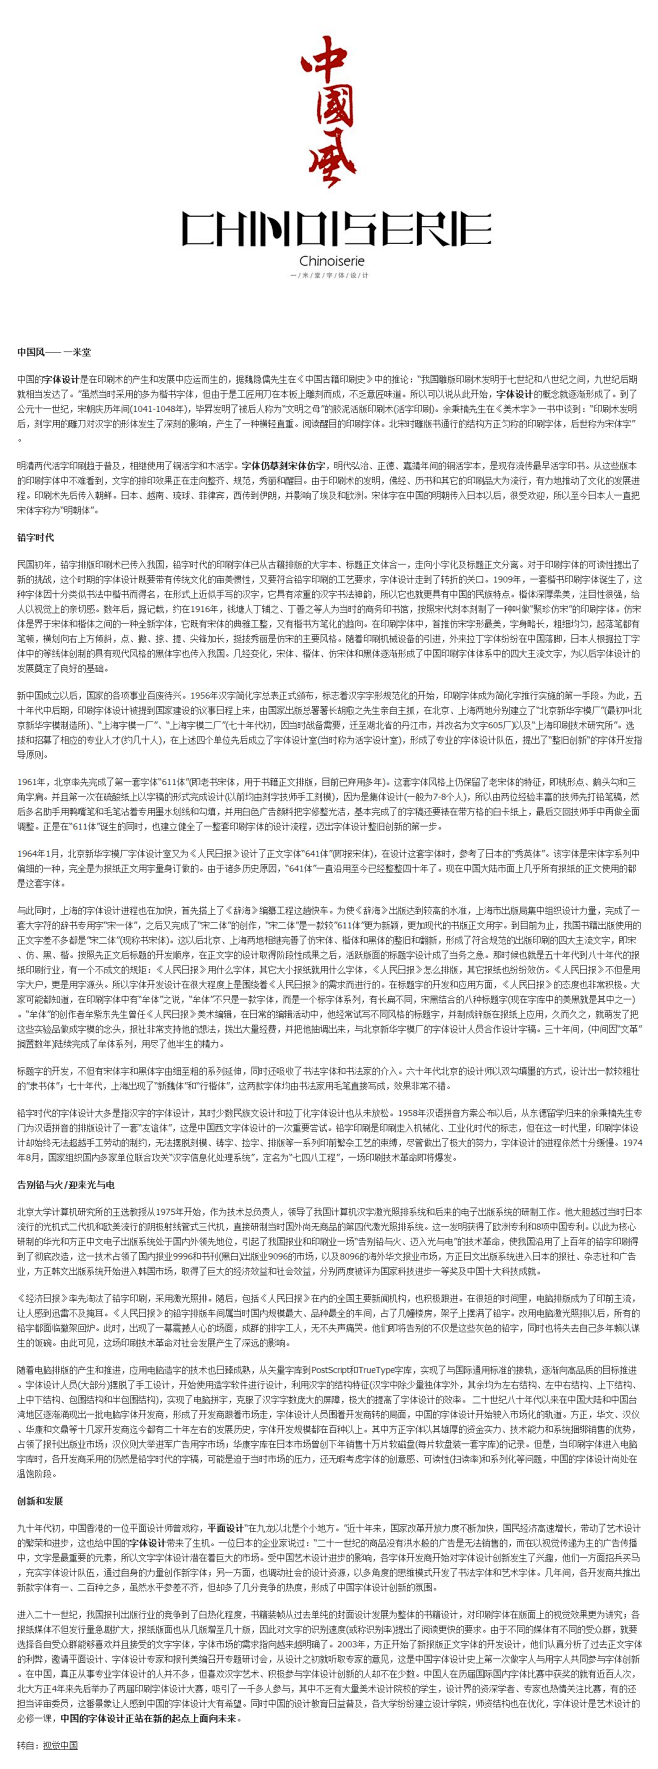 字体设计在中国_字体传奇网-中国首个字体...